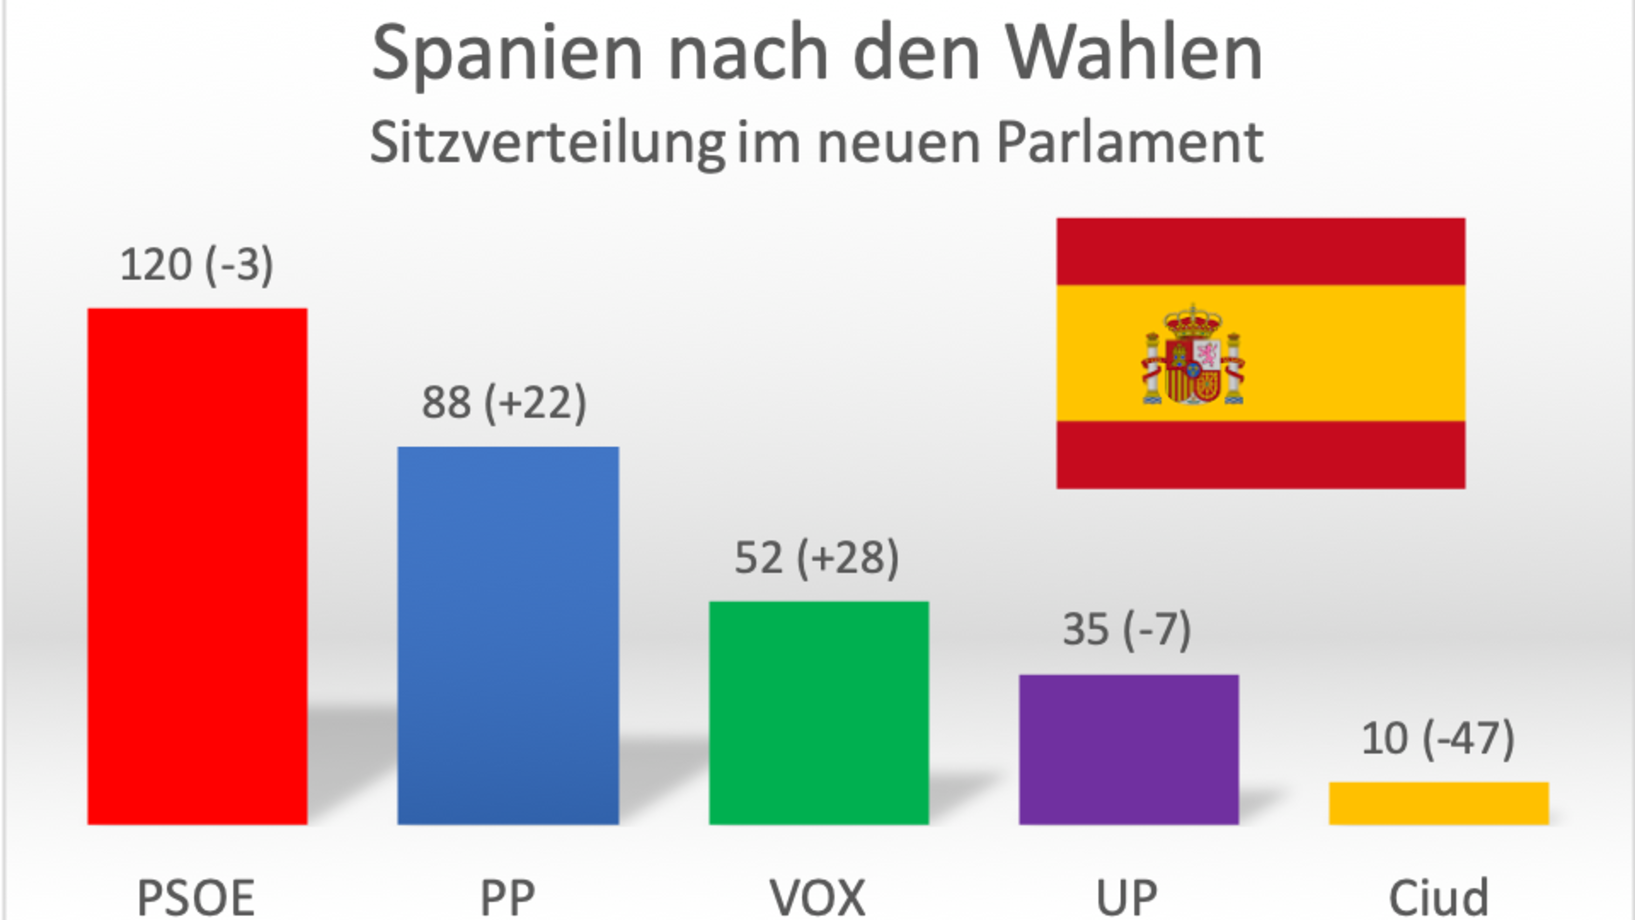 PSOE=Sozialistische spanische Arbeiterpartei; PP=Konservative Volkspartei; VOX=Rechtsradikale Partei; UP=Linke Unidad Popular; Ciud=Rechtsbürgerliche Ciudadanos; Grafik: Journal21.ch